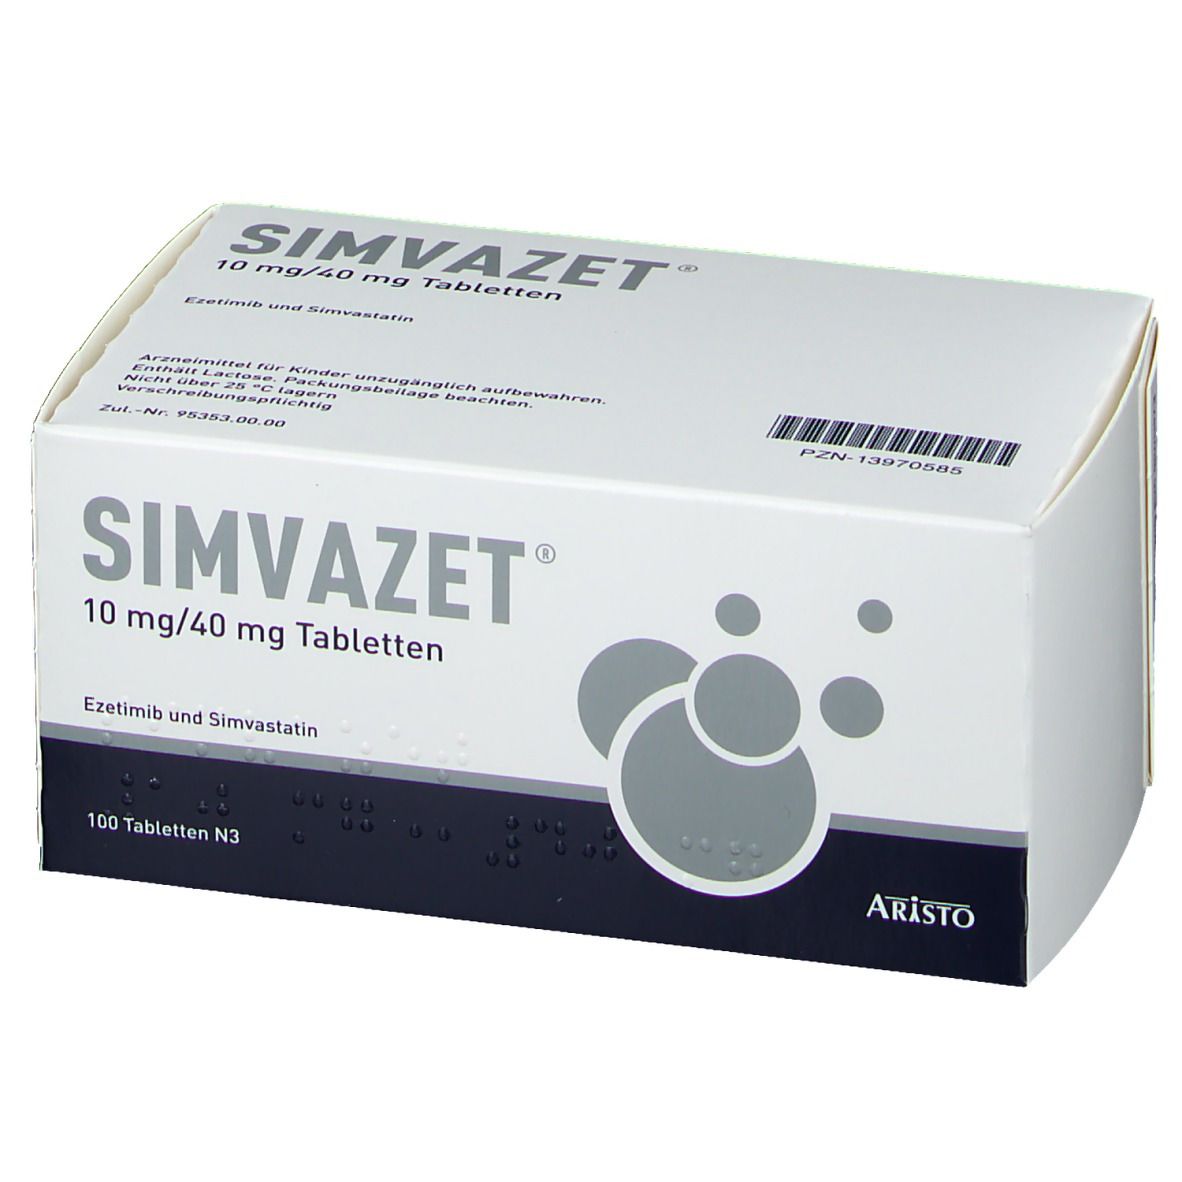 SIMVAZET® 10 mg/40 mg